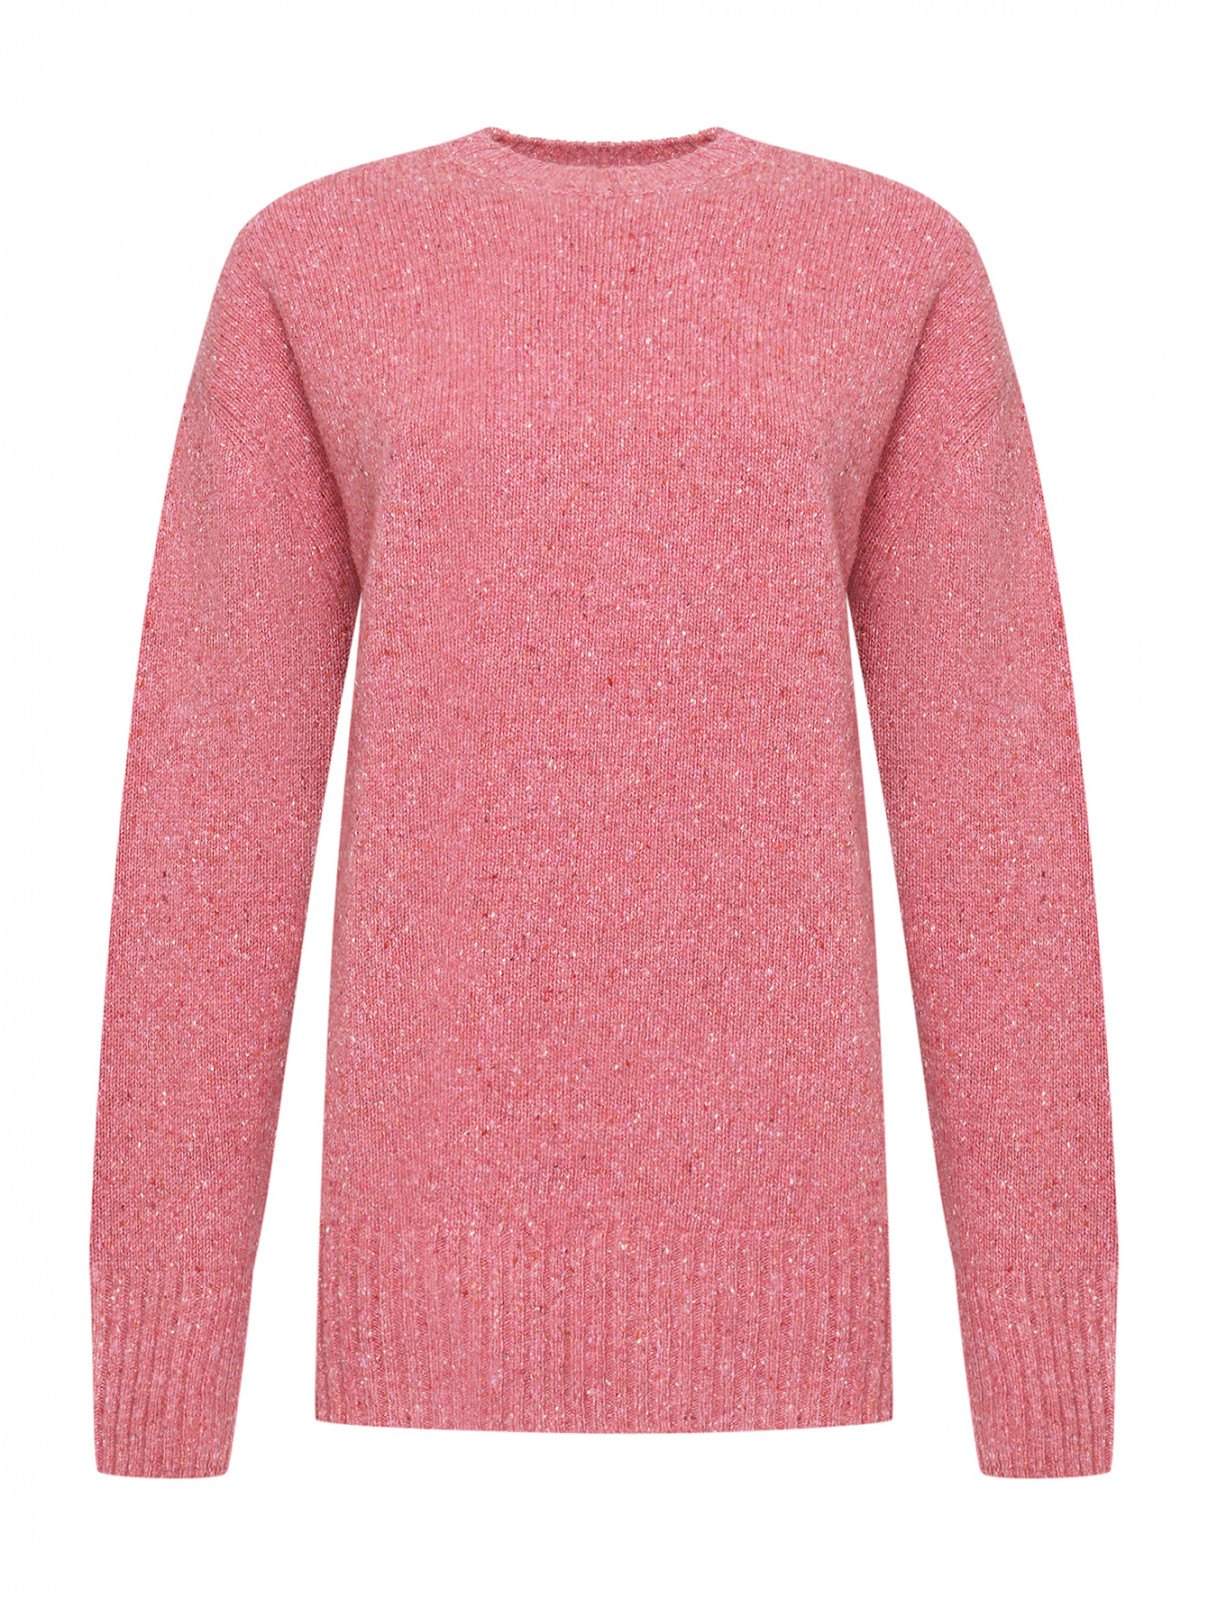 Джемпер из шерсти с круглым вырезом Shade  –  Общий вид  – Цвет:  Розовый